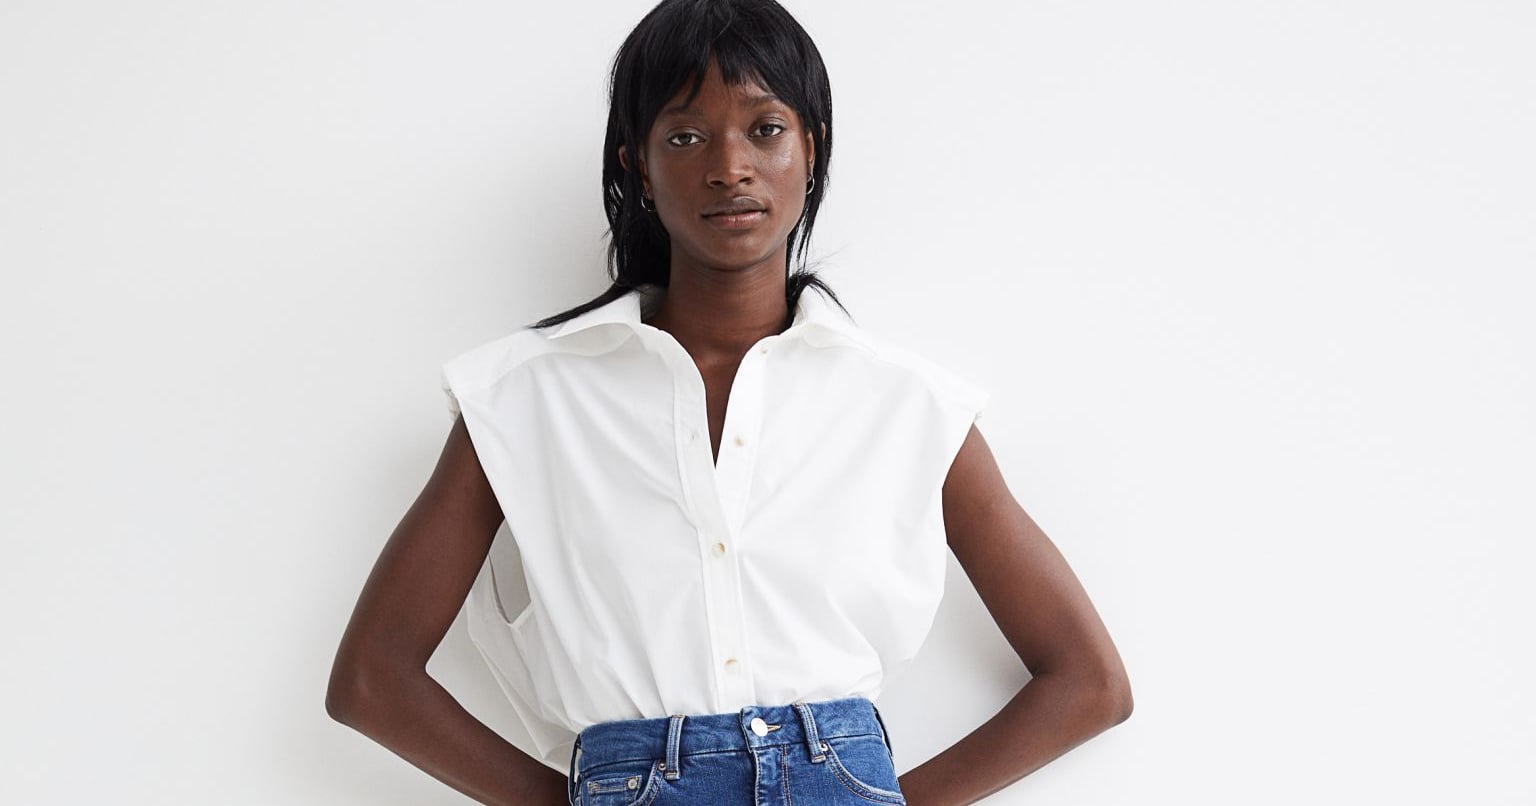 The Best H&M Jeans Under $50 | POPSUGAR Fashion